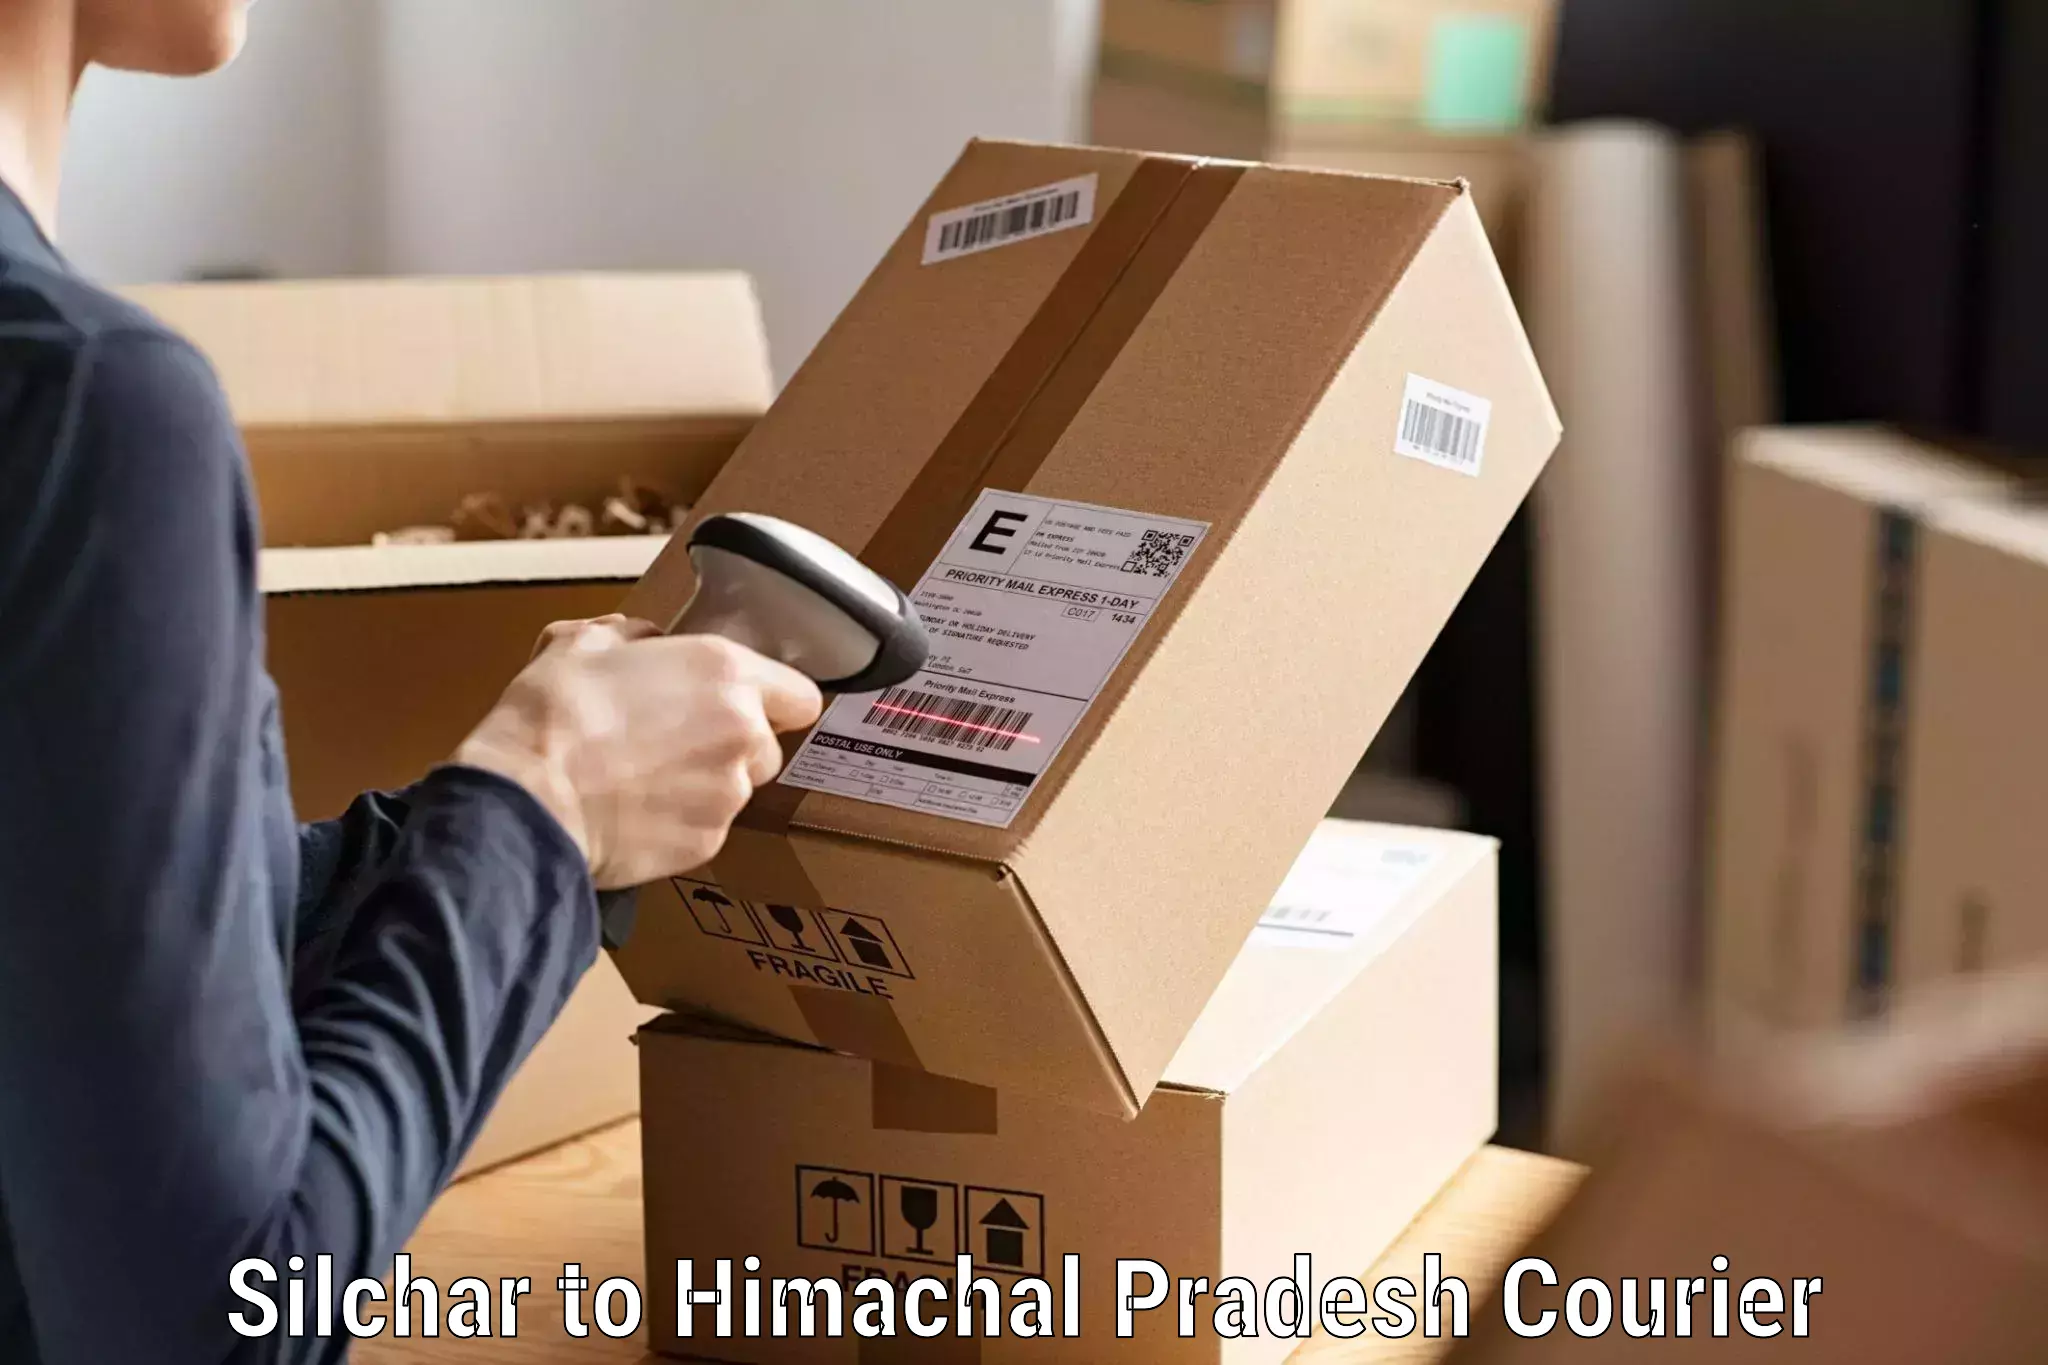 Cash on delivery service Silchar to Gagret